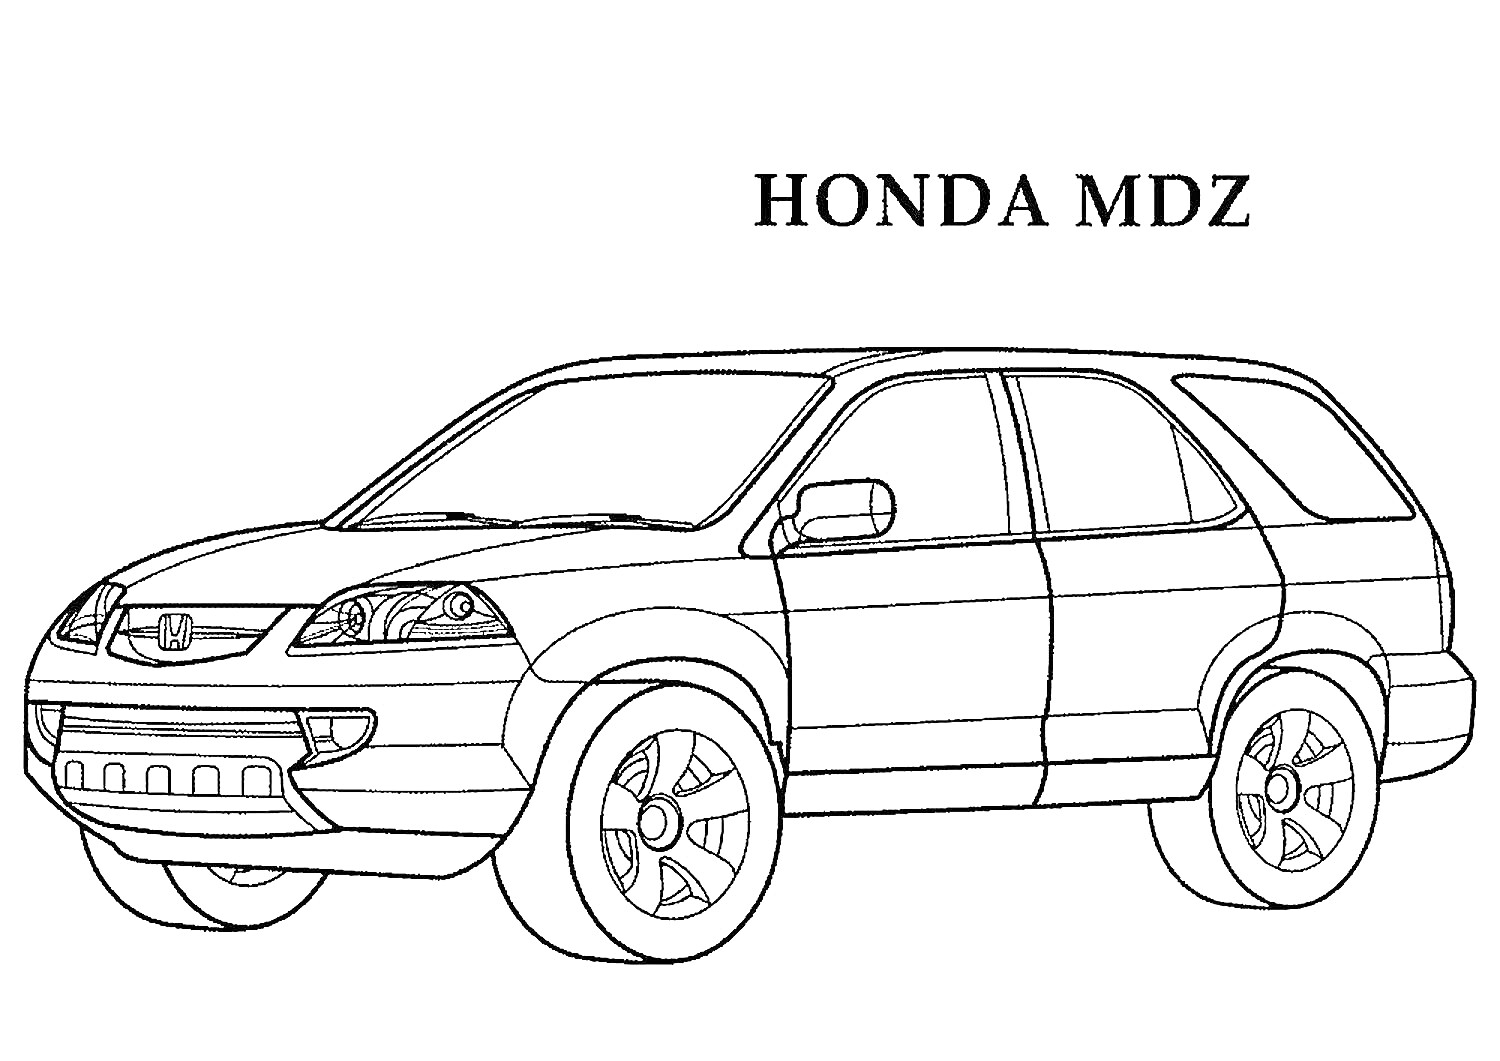 Раскраска Раскраска автомобиля Honda MDZ с крупными колесами, передними и задними дверями, передними фарами и боковыми зеркалами